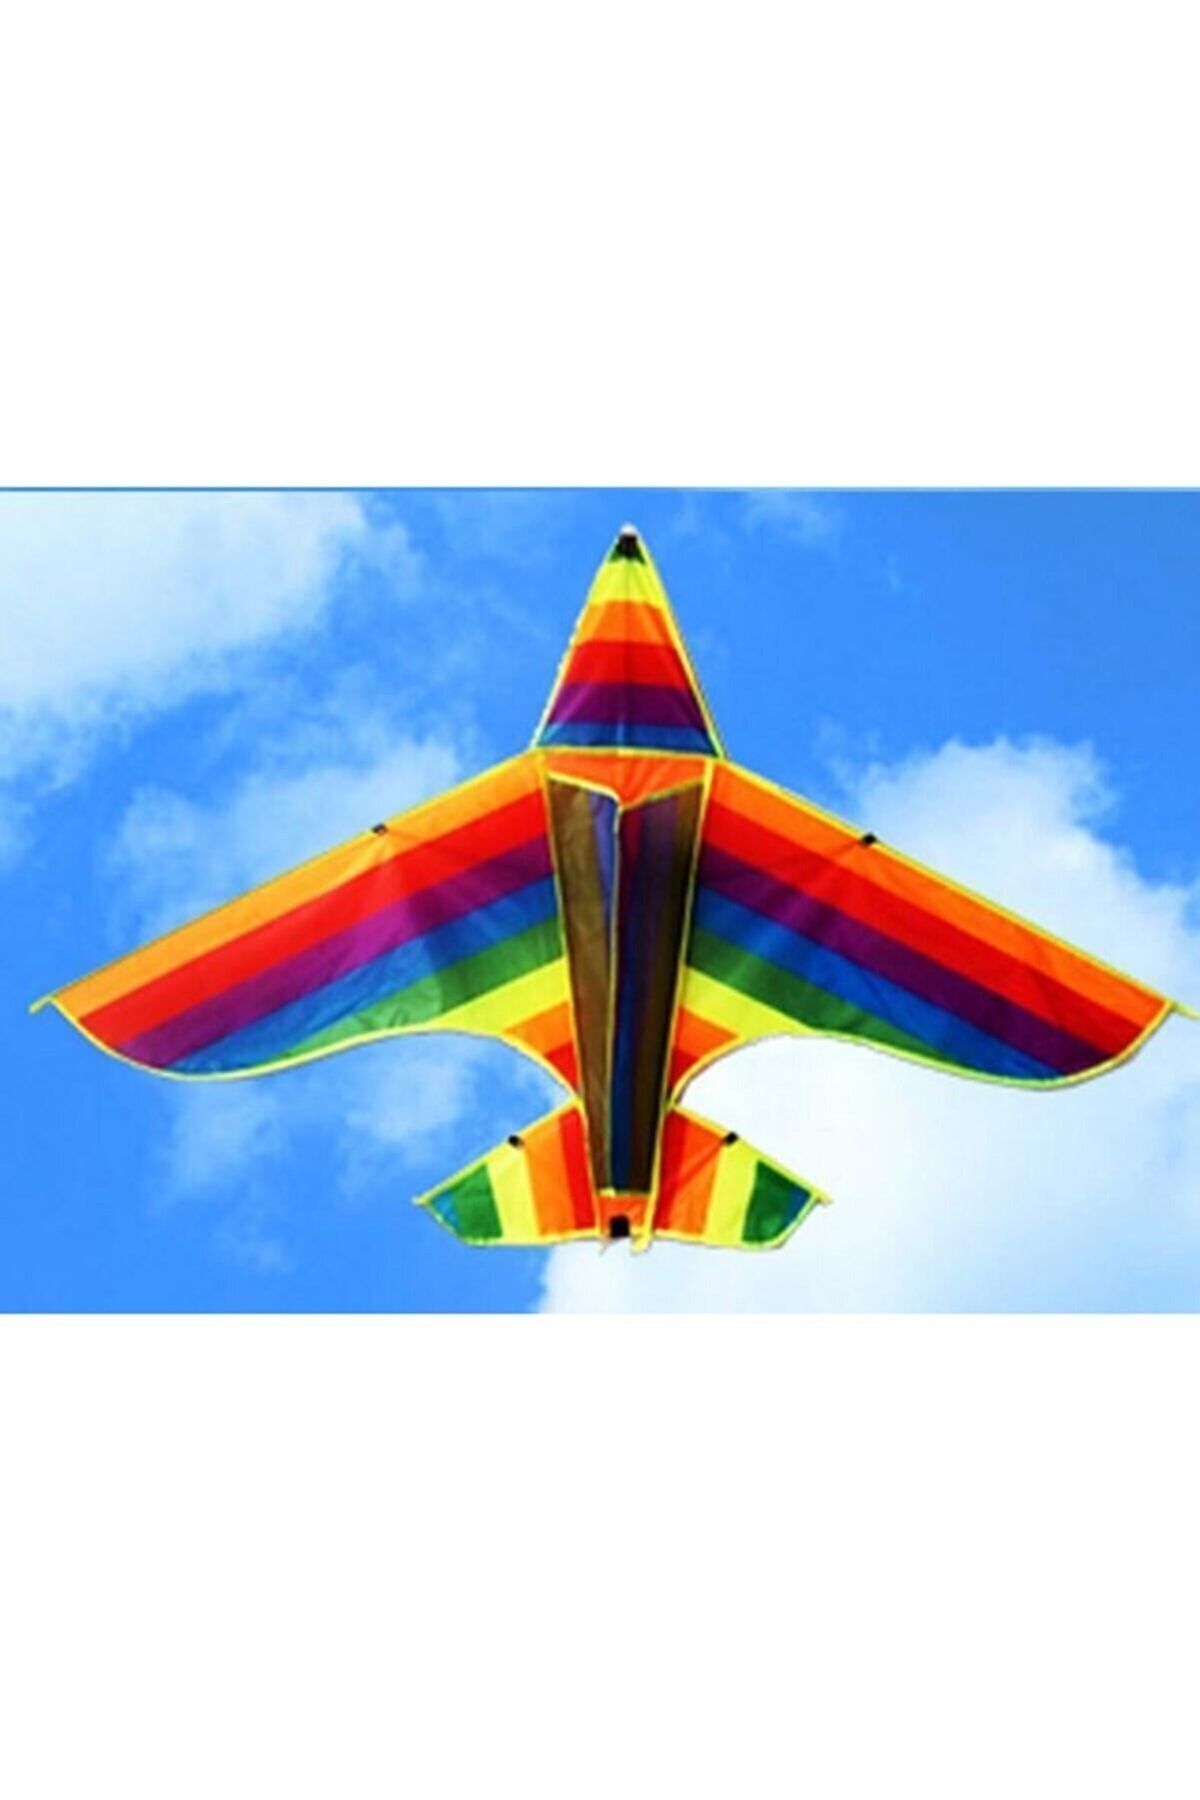 Makro Optik Gökkuşağı Roket Uçurtma F-35 Uçak